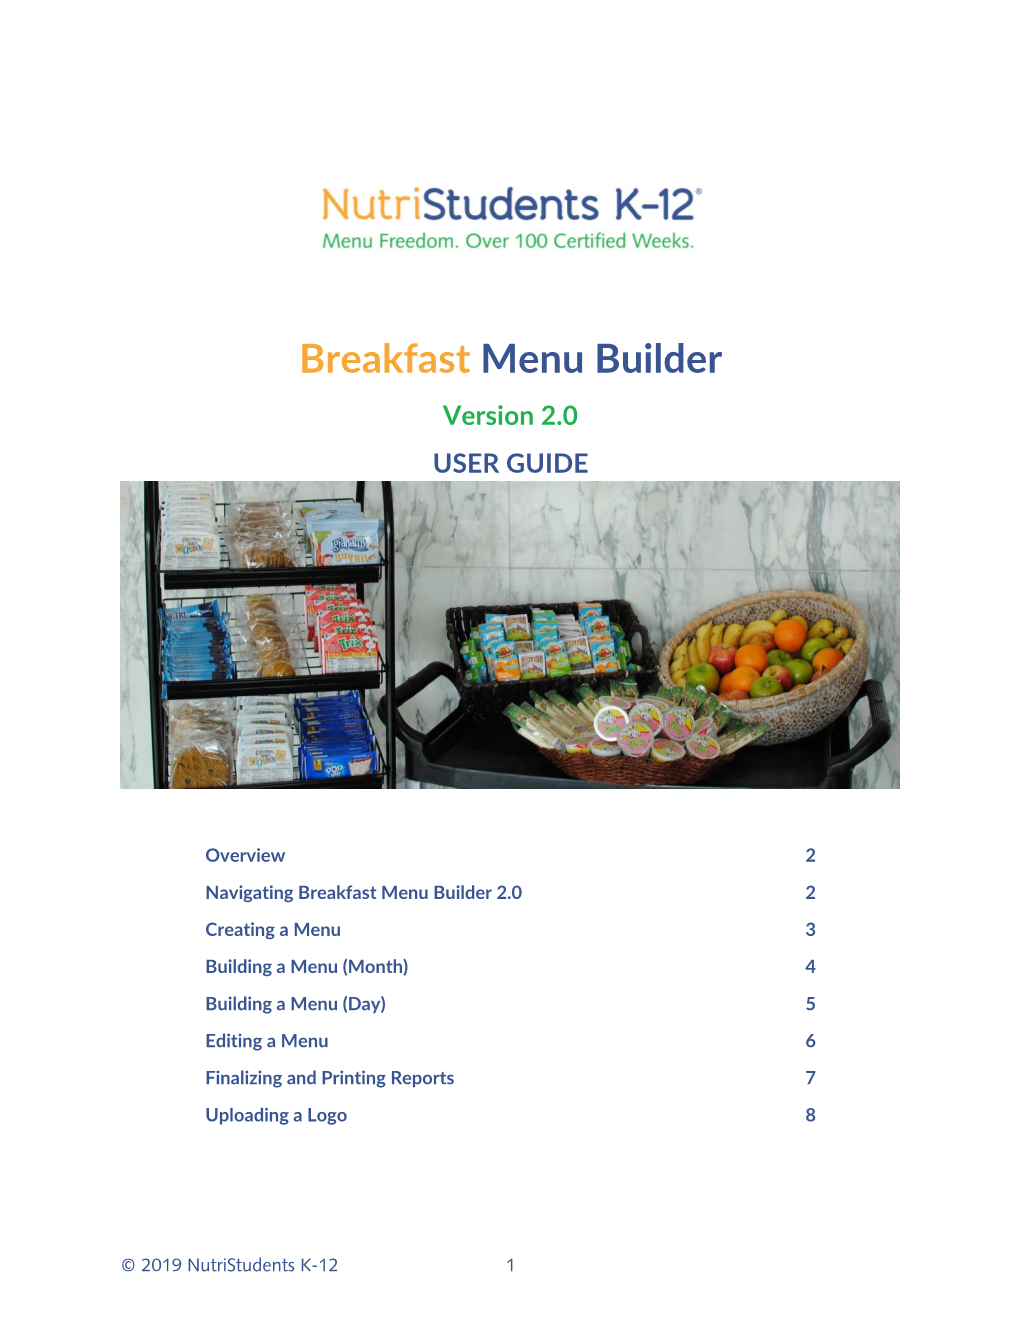 Breakfast Menu Builder Version 2.0 USER GUIDE